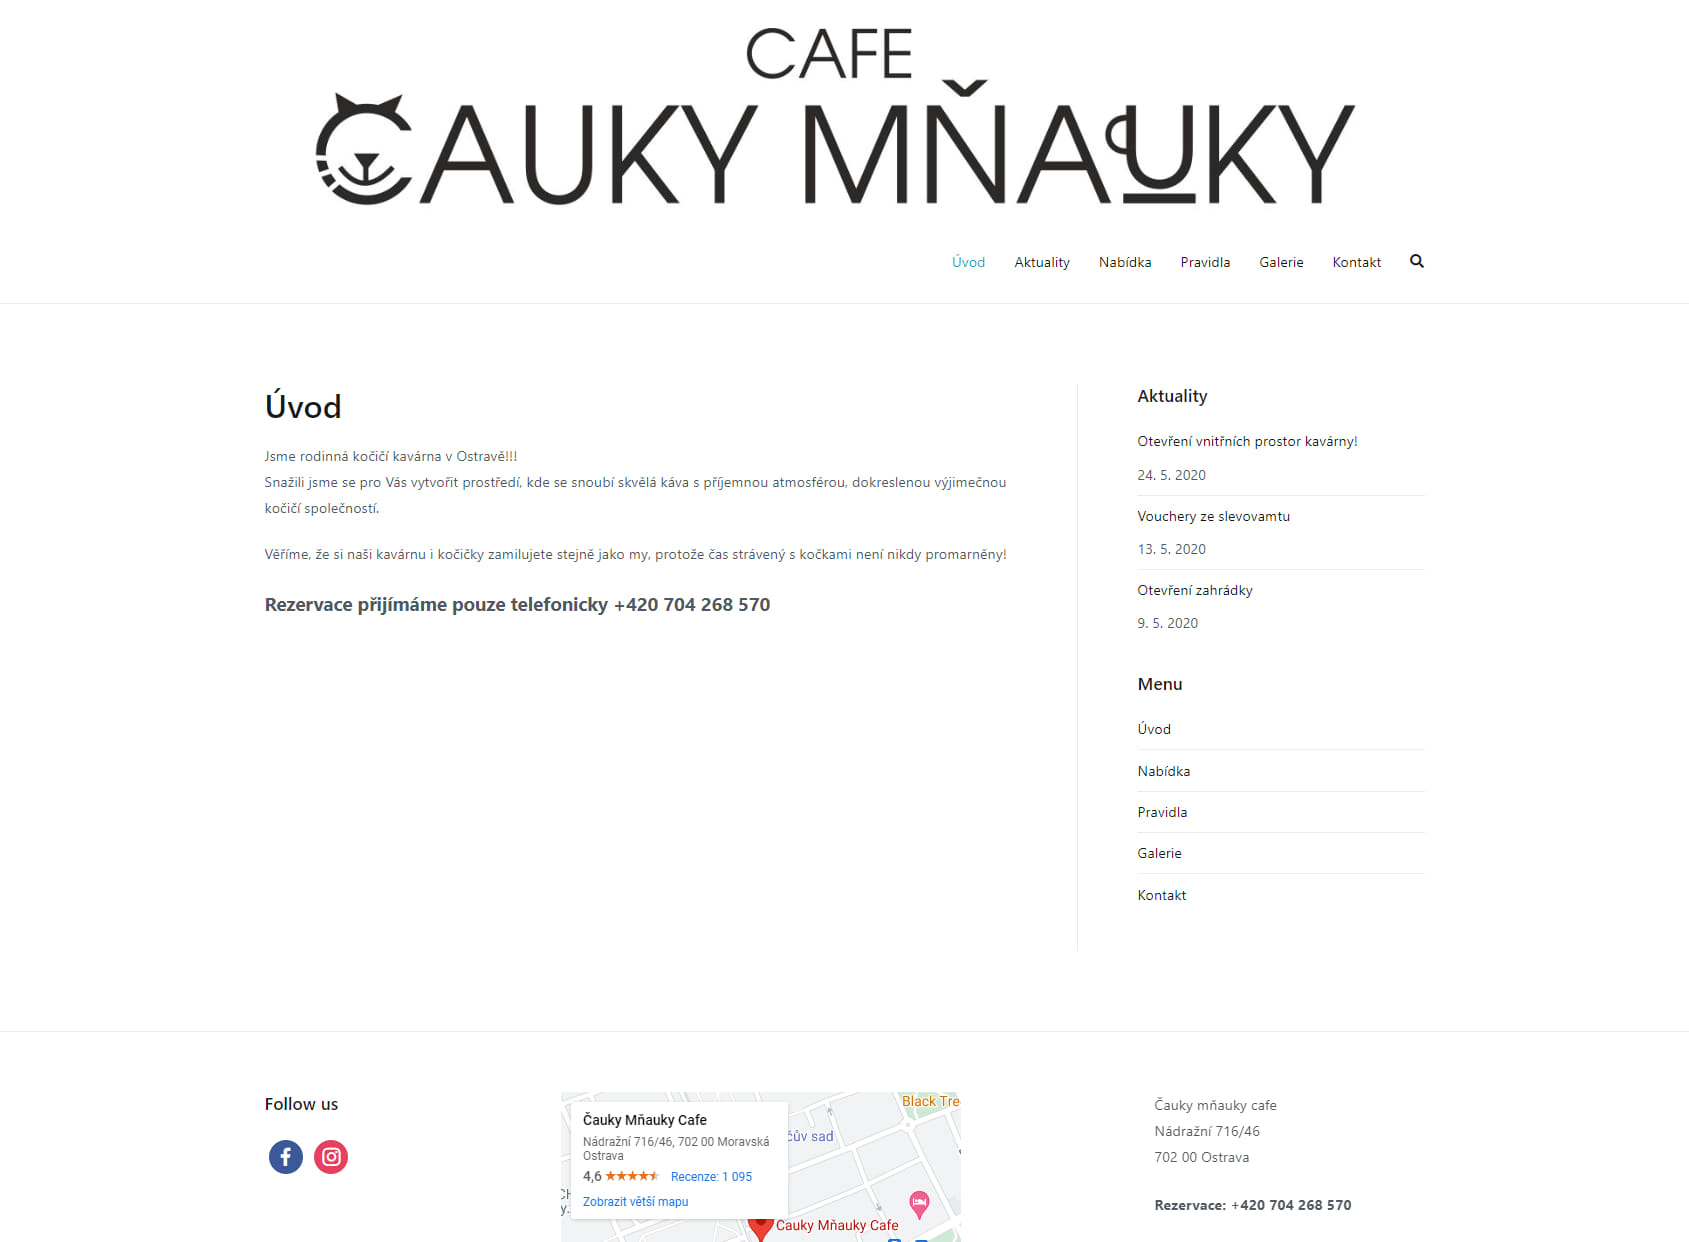 Čauky Mňauky Cafe